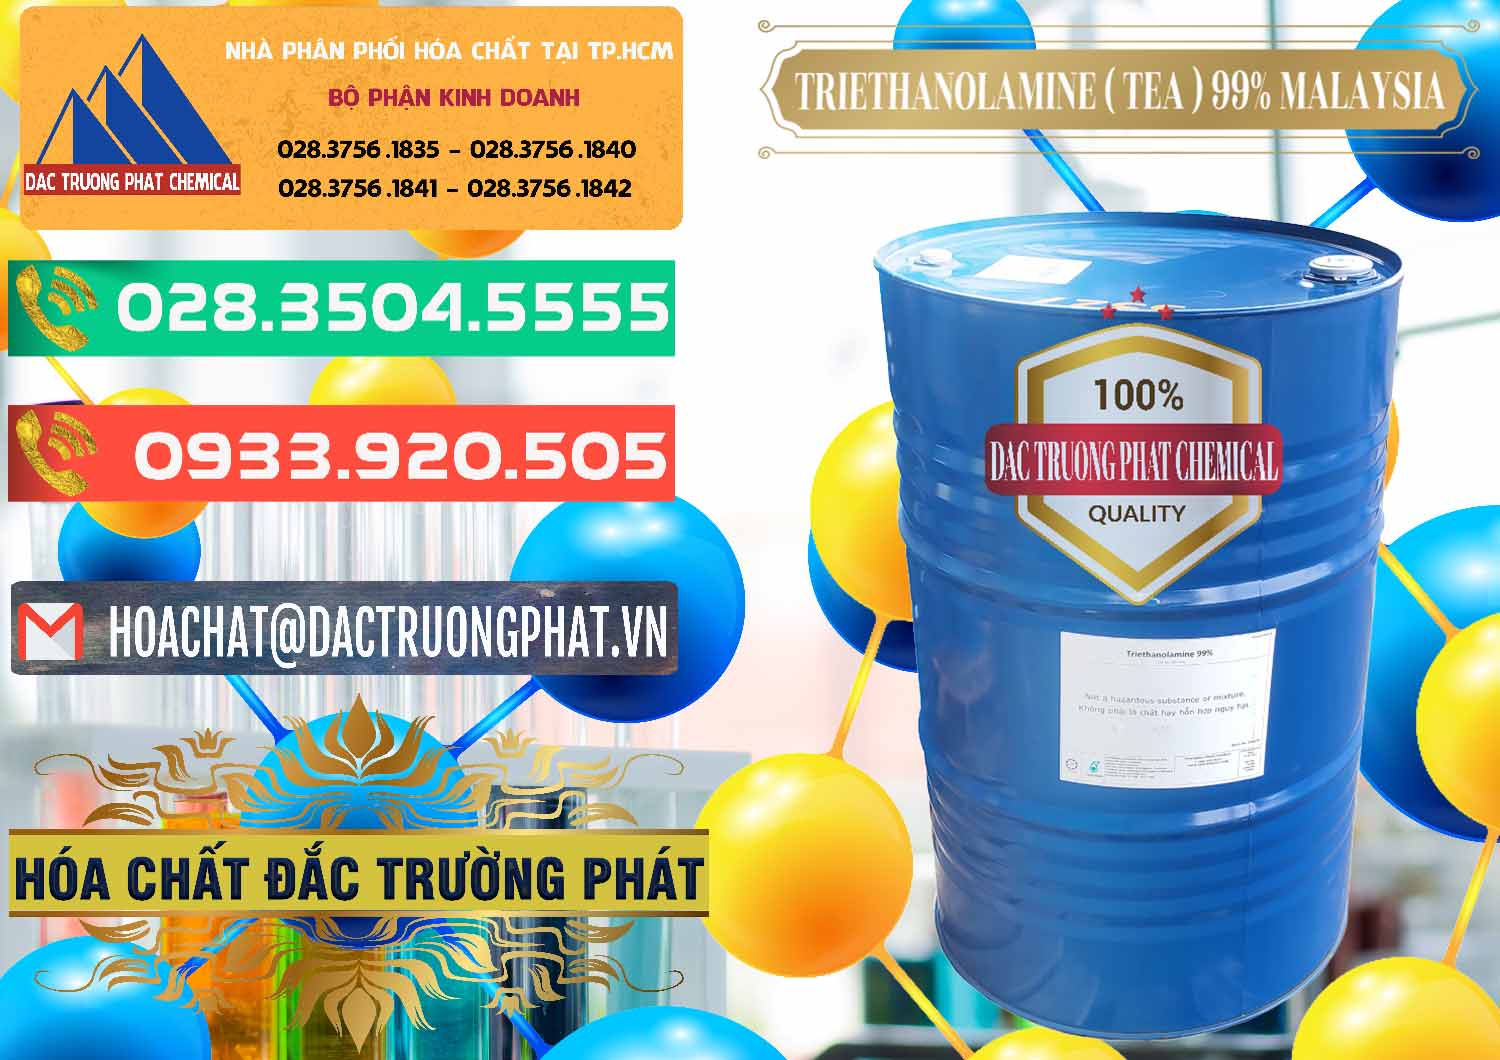 Nơi chuyên cung cấp - bán TEA - Triethanolamine 99% Mã Lai Malaysia - 0323 - Công ty nhập khẩu - cung cấp hóa chất tại TP.HCM - congtyhoachat.com.vn